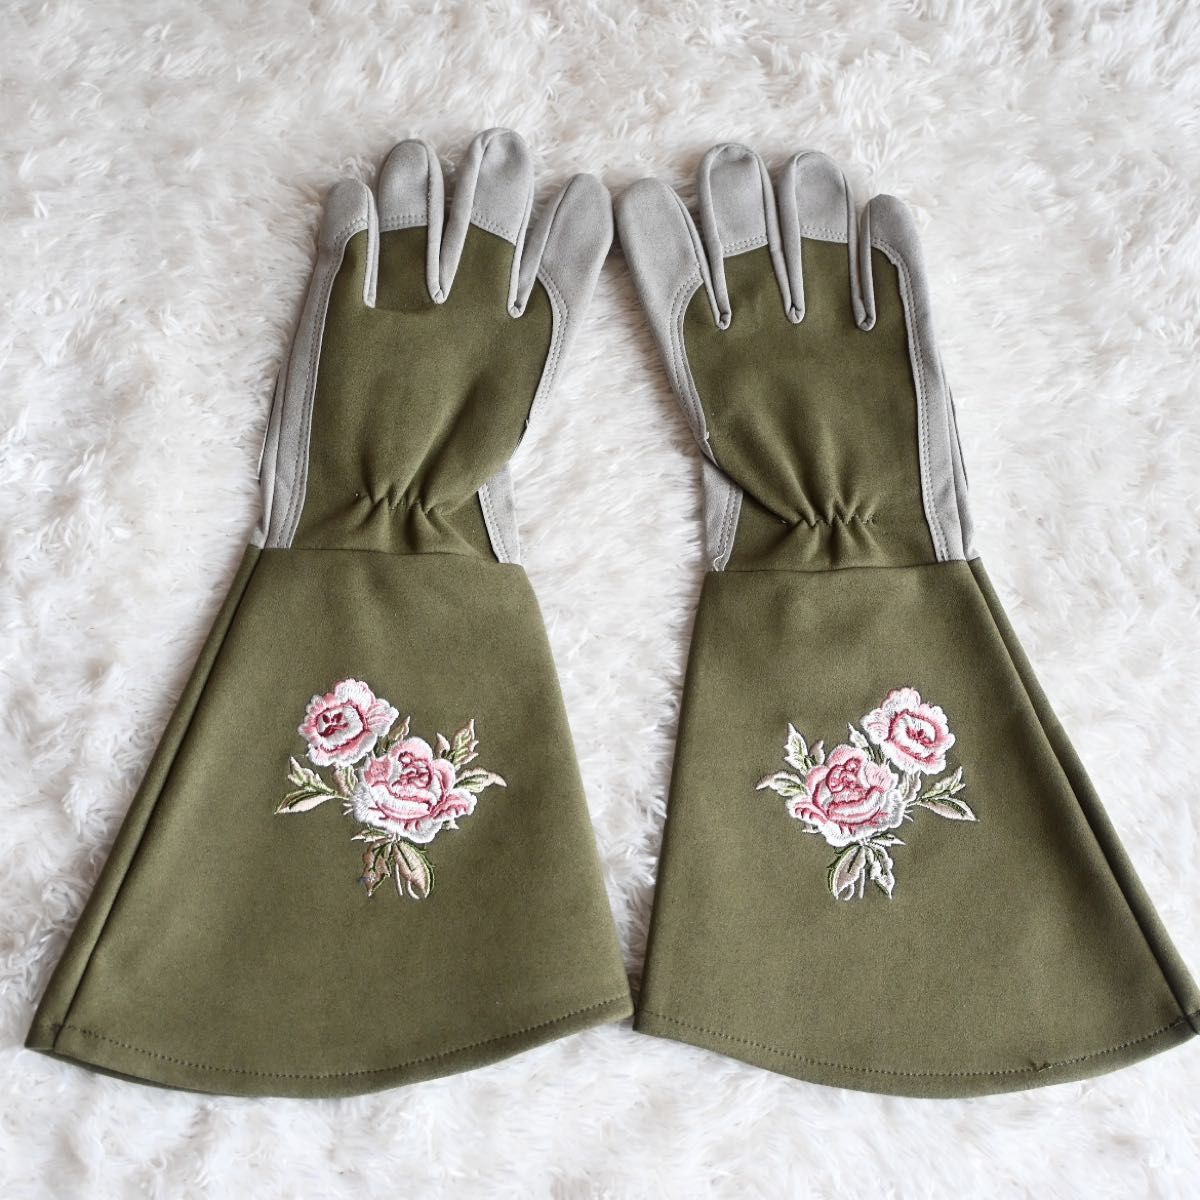 ガーデニング 手袋 ロング 薔薇 草むしり 園芸用グローブ バラ用 オリーブ Mサイズ